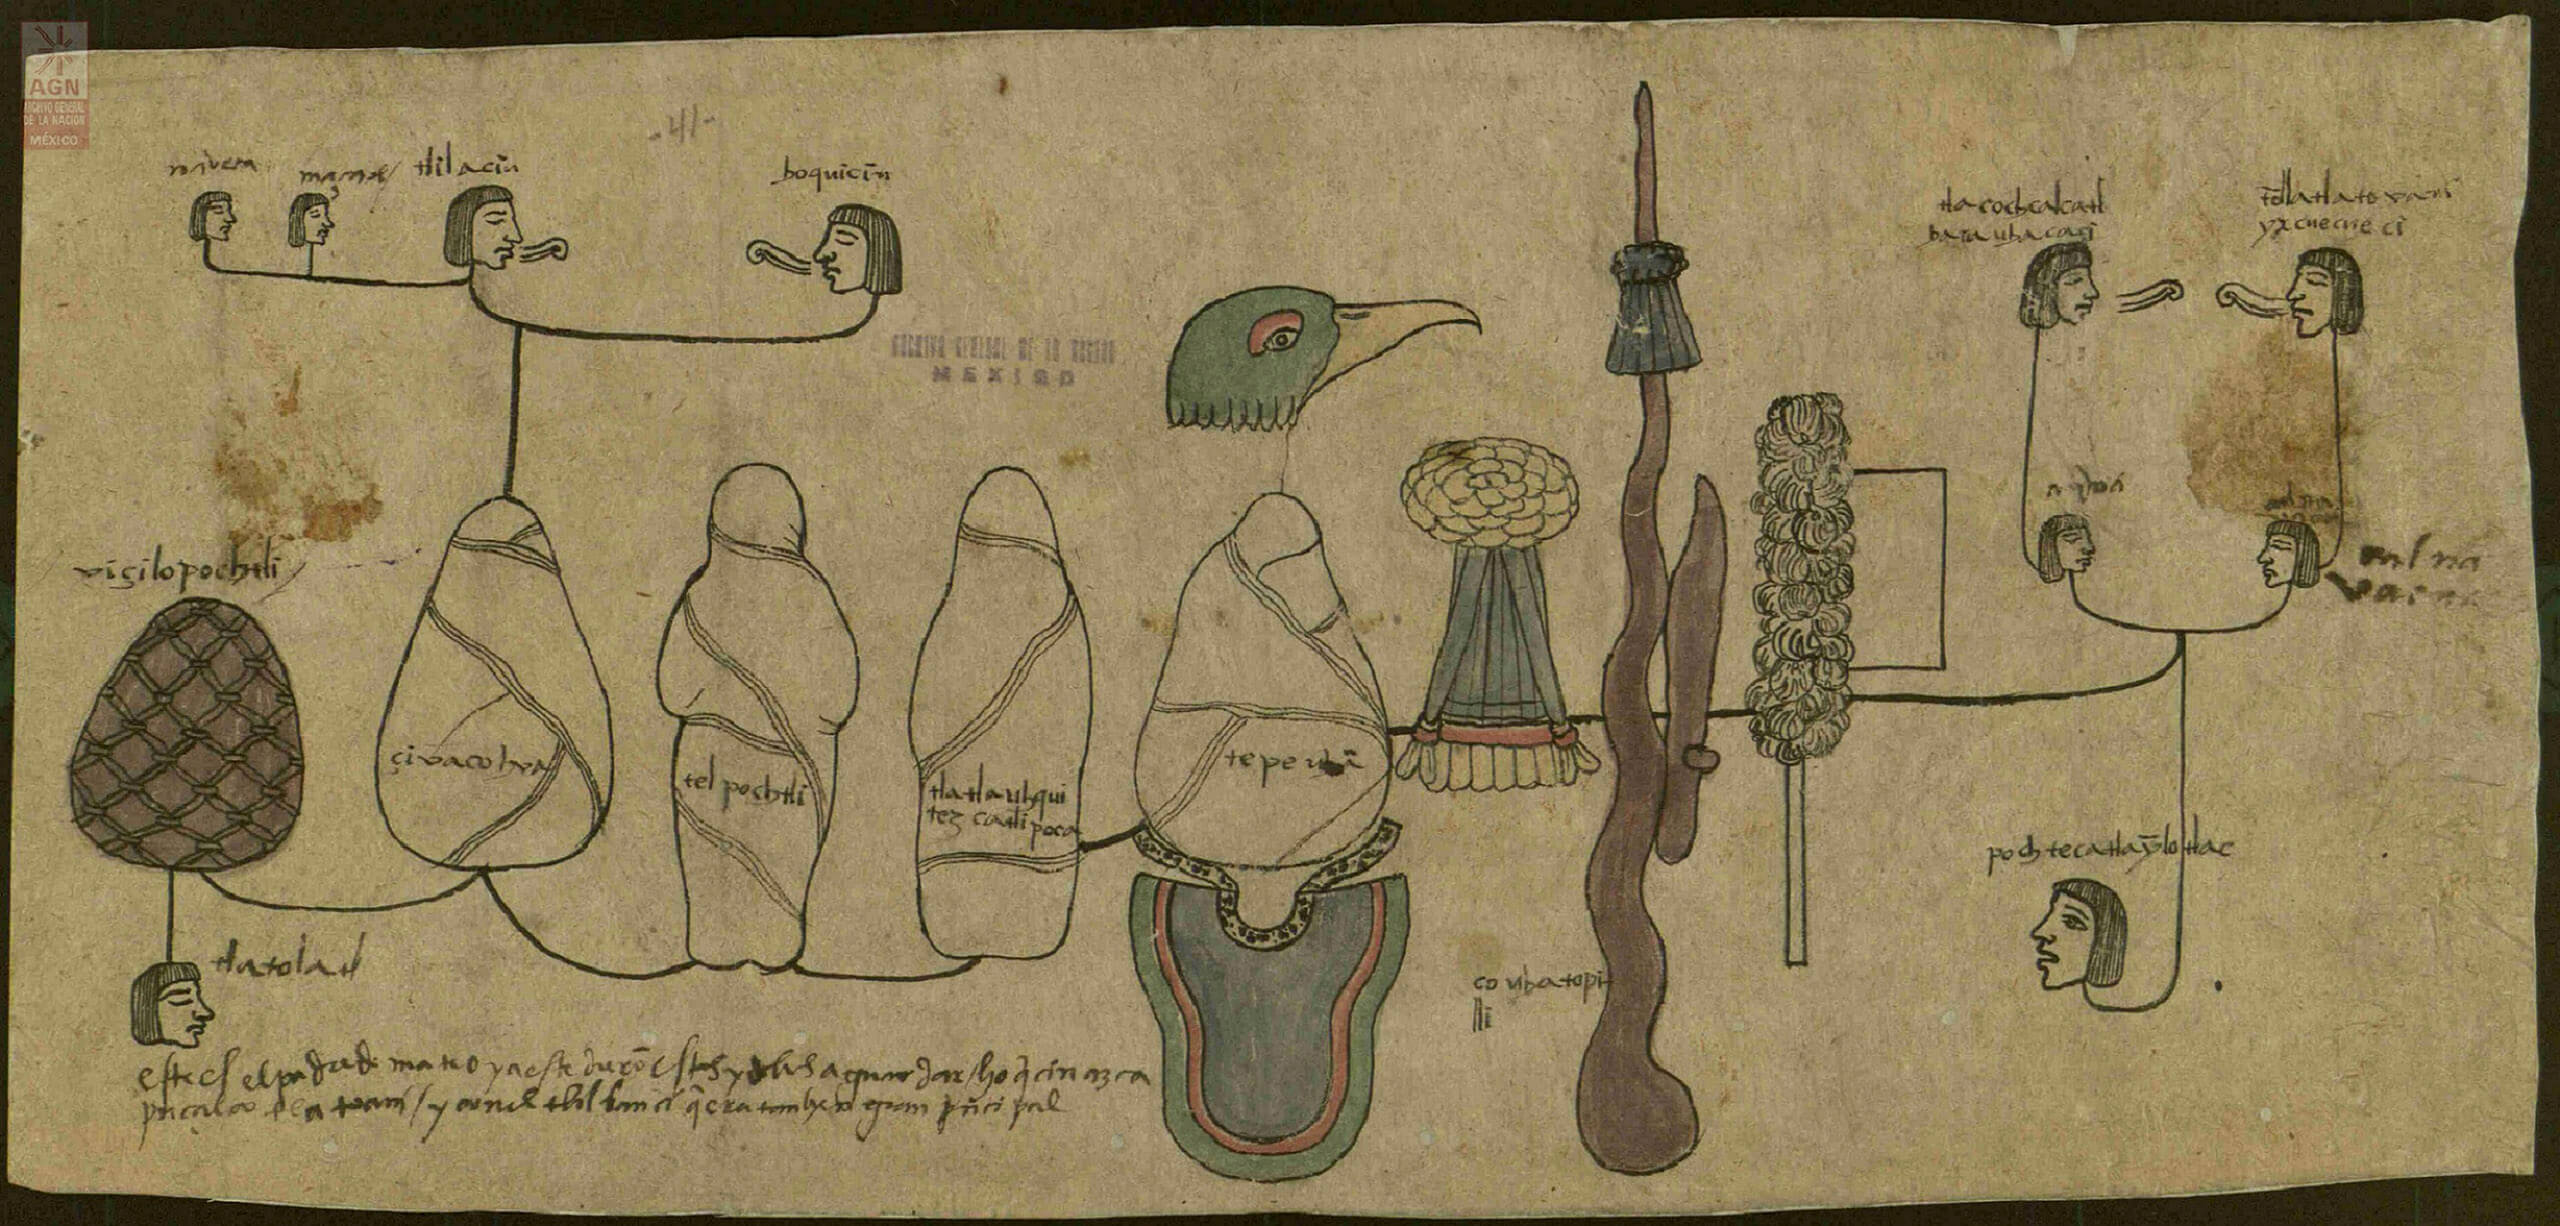 Pintura de la búsqueda de los bultos de los dioses. Juicio inquisitorial (1539-1540).  Archivo General de la Nación